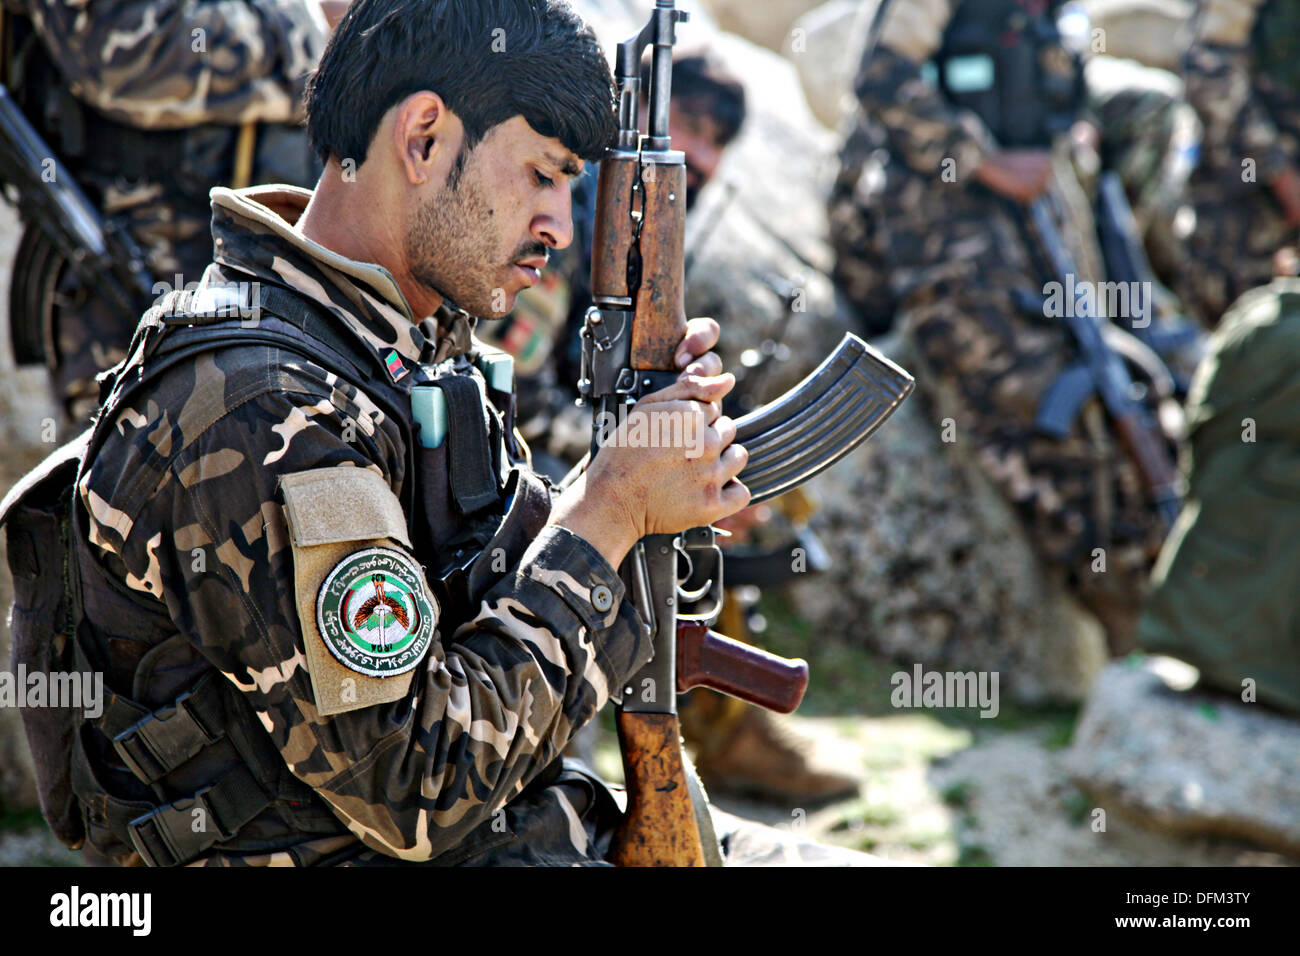 Eine afghanische National Directorate of Security Soldat untersucht seine Waffe nach einer Mission Feburar 20, 2013 in der Nähe von dem Dorf Abu Zai in Provinz Laghman, Afghanistan. Stockfoto